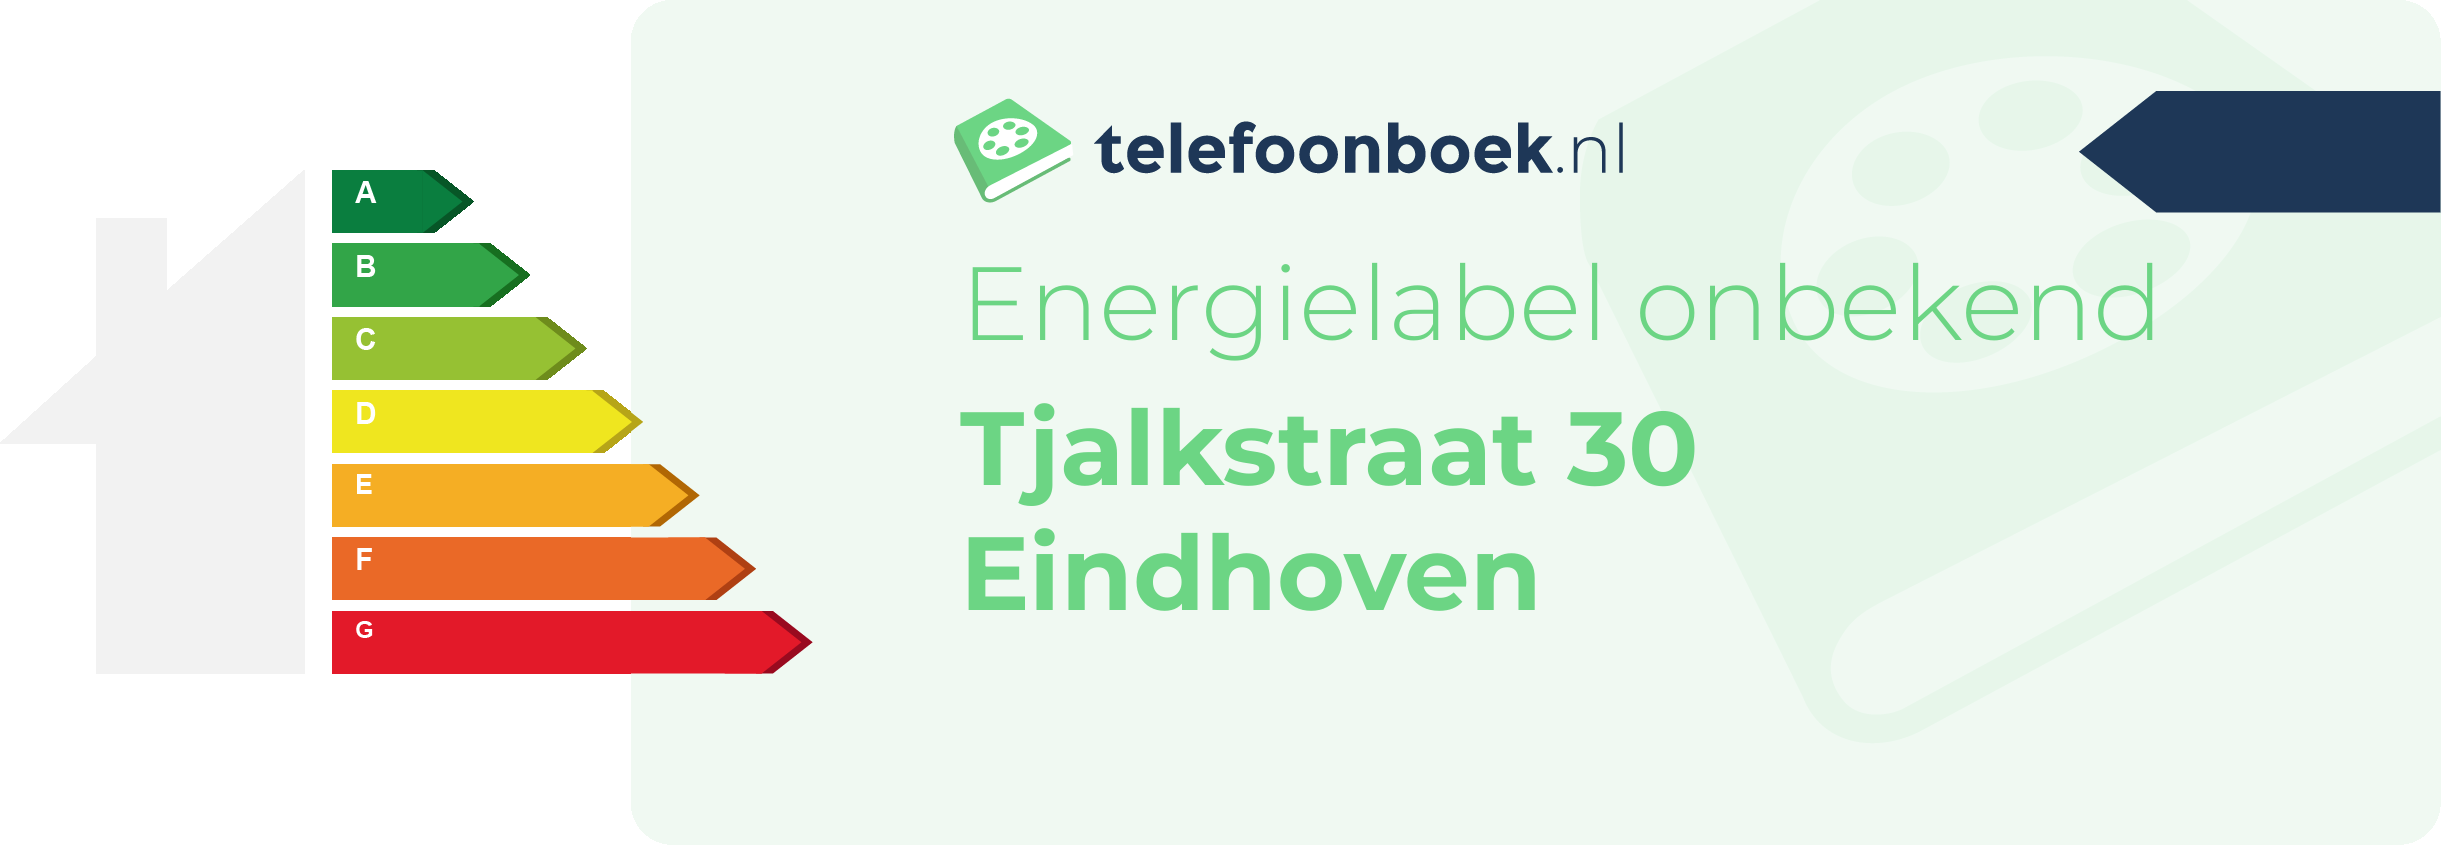 Energielabel Tjalkstraat 30 Eindhoven